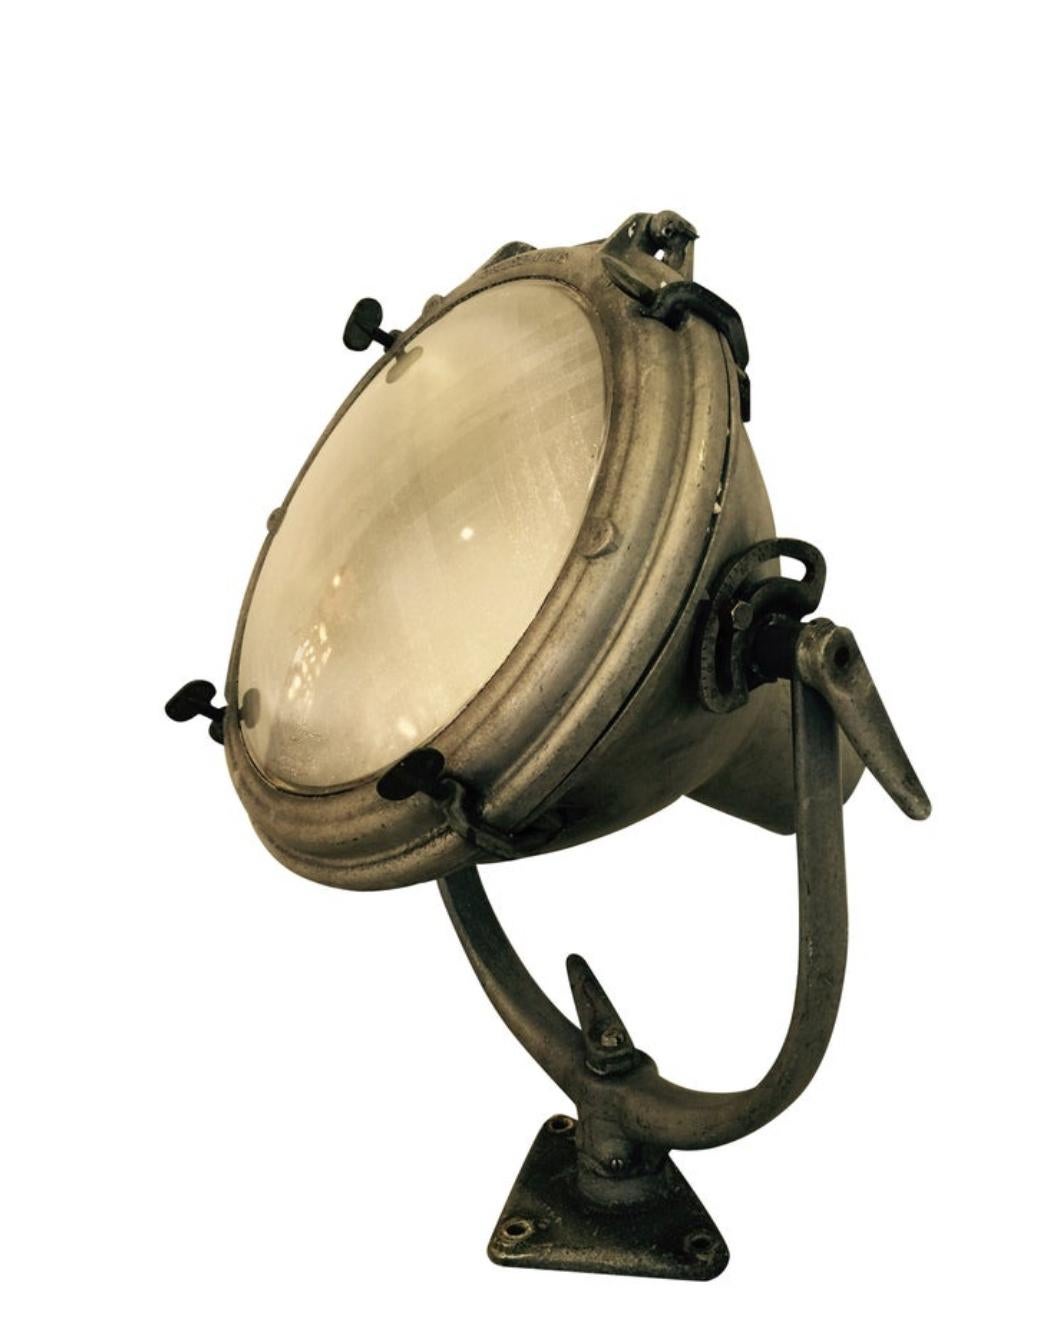 vintage marine searchlight